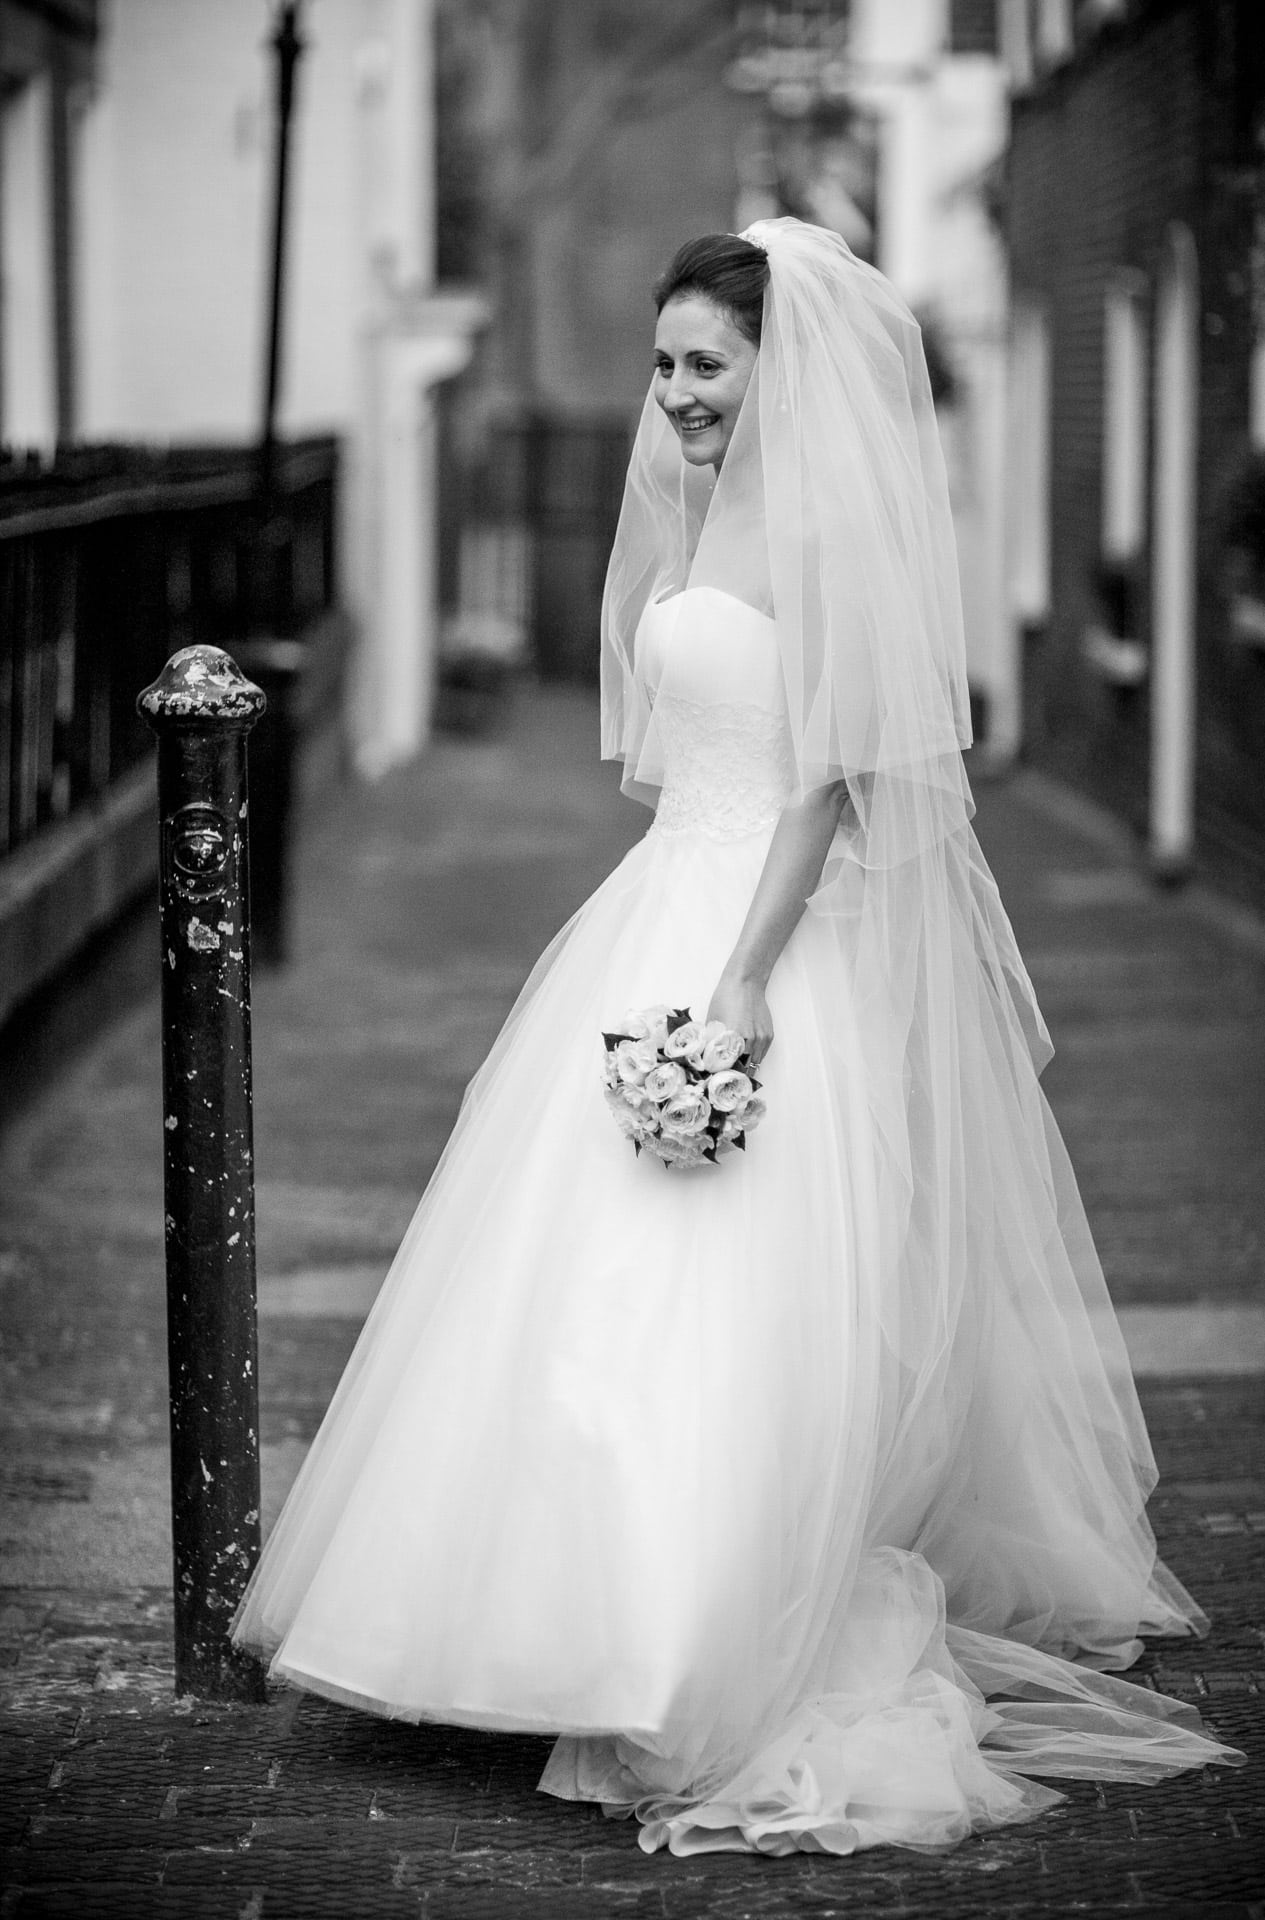 Bride in London side street